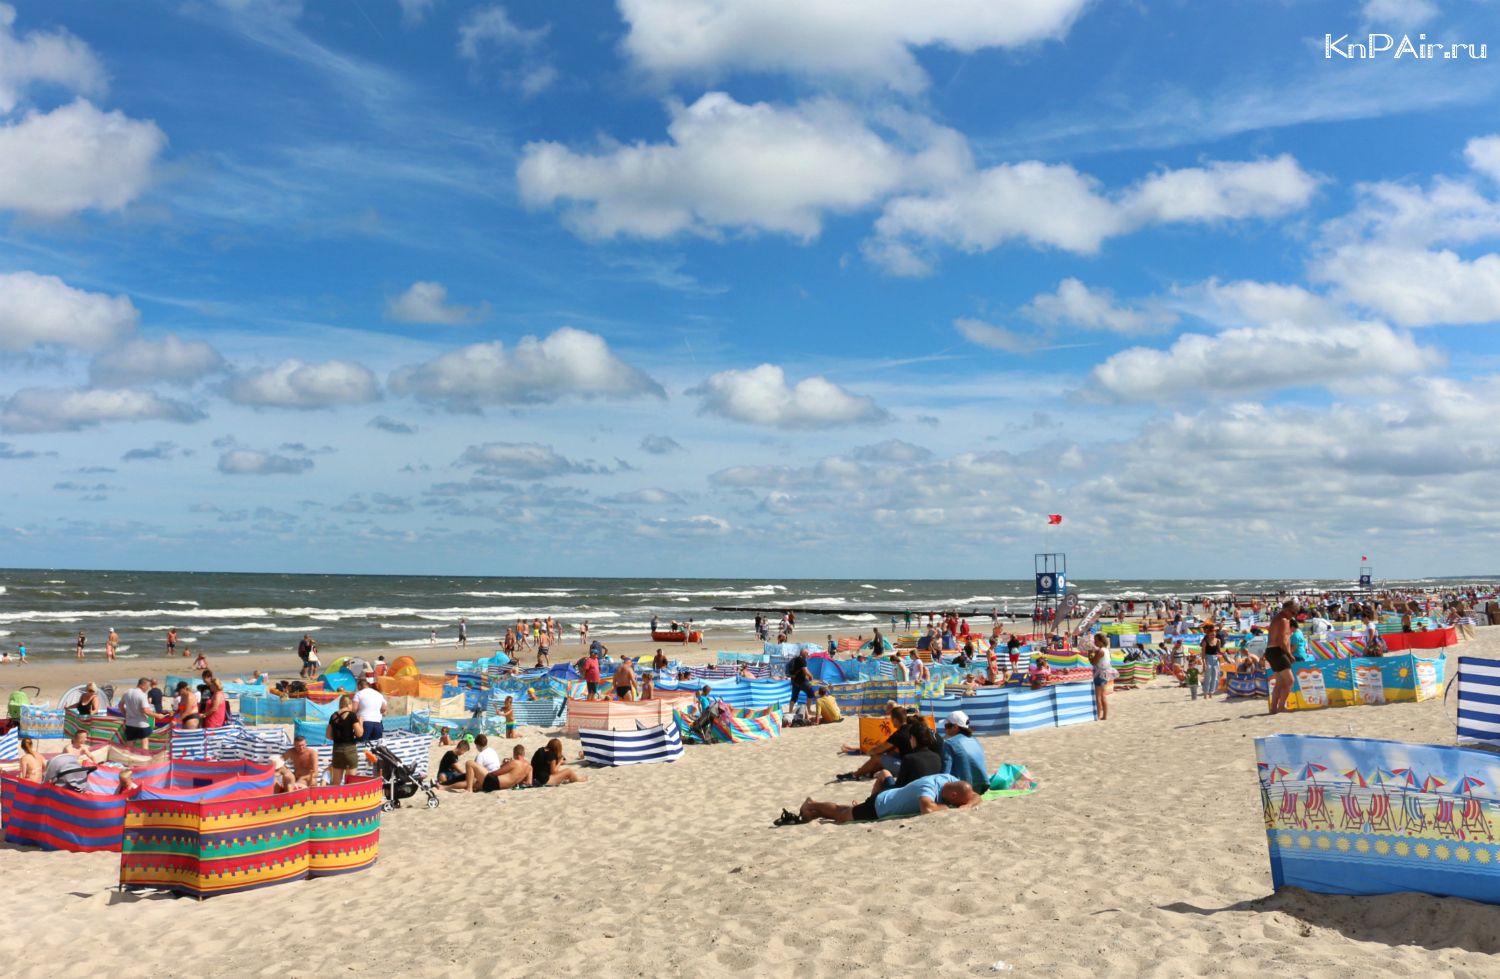 Как хорошо отдохнуть летом на море в калининграде - калининградское море - сайт-путеводитель по калининграду, кенигбсергу, калининградской области и балтийскому морю